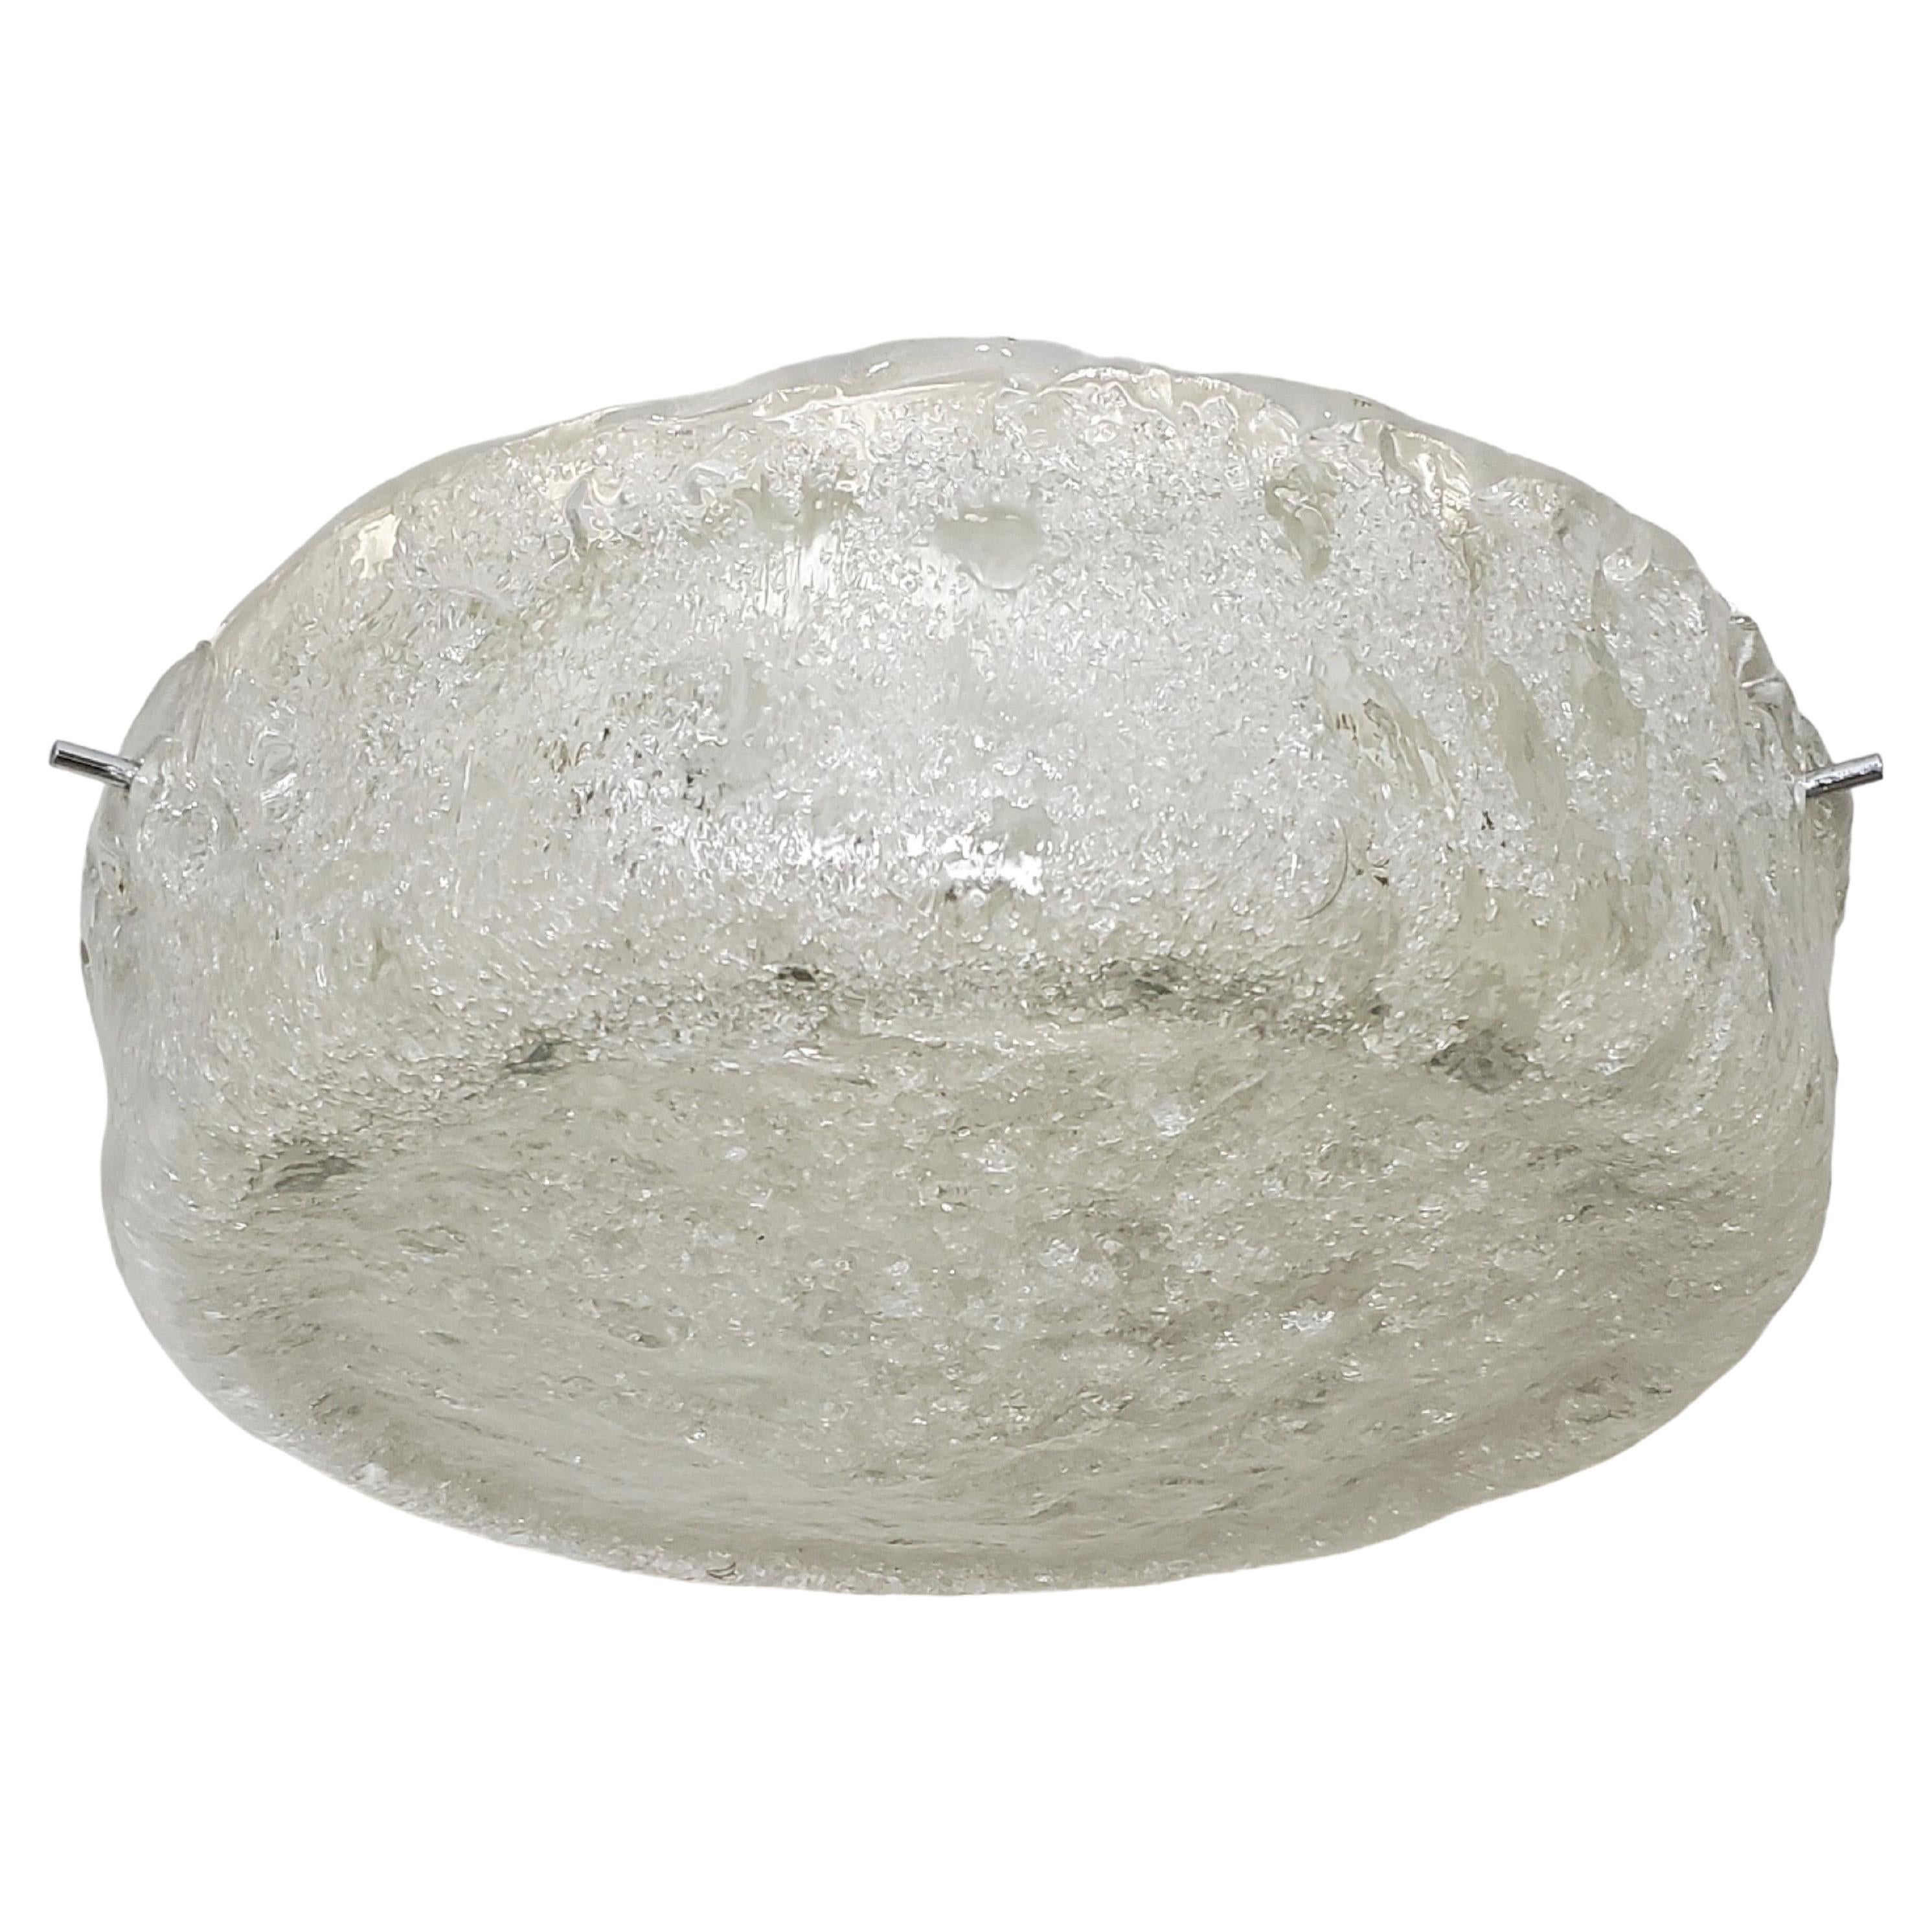  Monture encastrée ronde de style moderne du milieu du siècle, circa ~1965,  attribuée à Kaiser Leuchten, présente un abat-jour épais en verre fabriqué à la main. 
L'abat-jour, caractérisé par une surface texturée claire et givrée, ondule et se